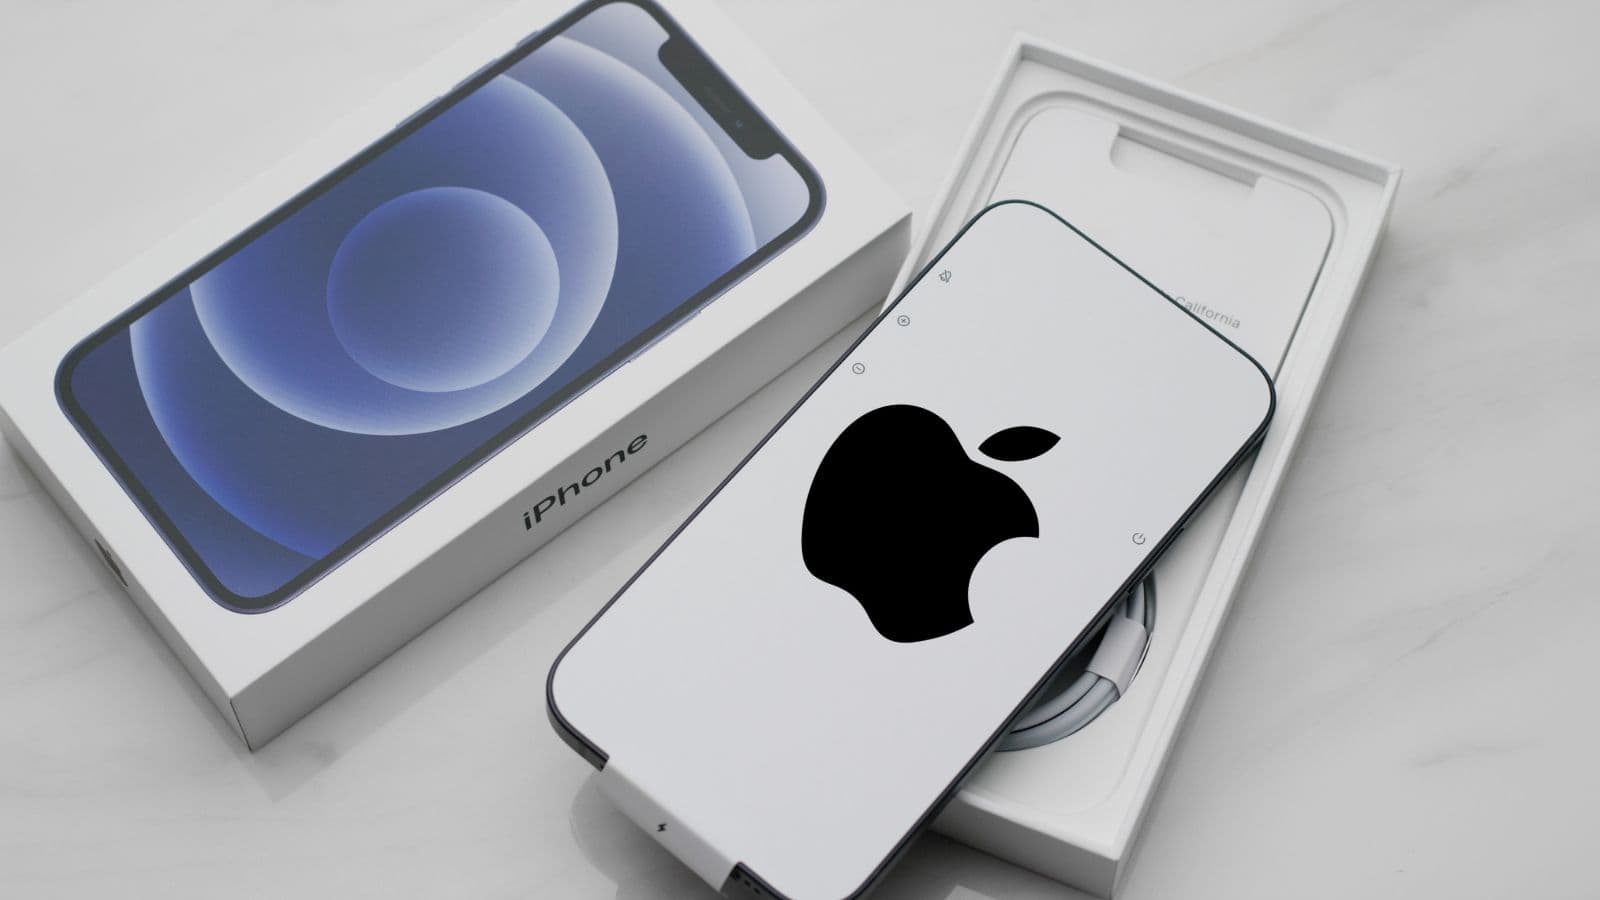 Apple decide di salutare gli adesivi all'interno delle confezioni